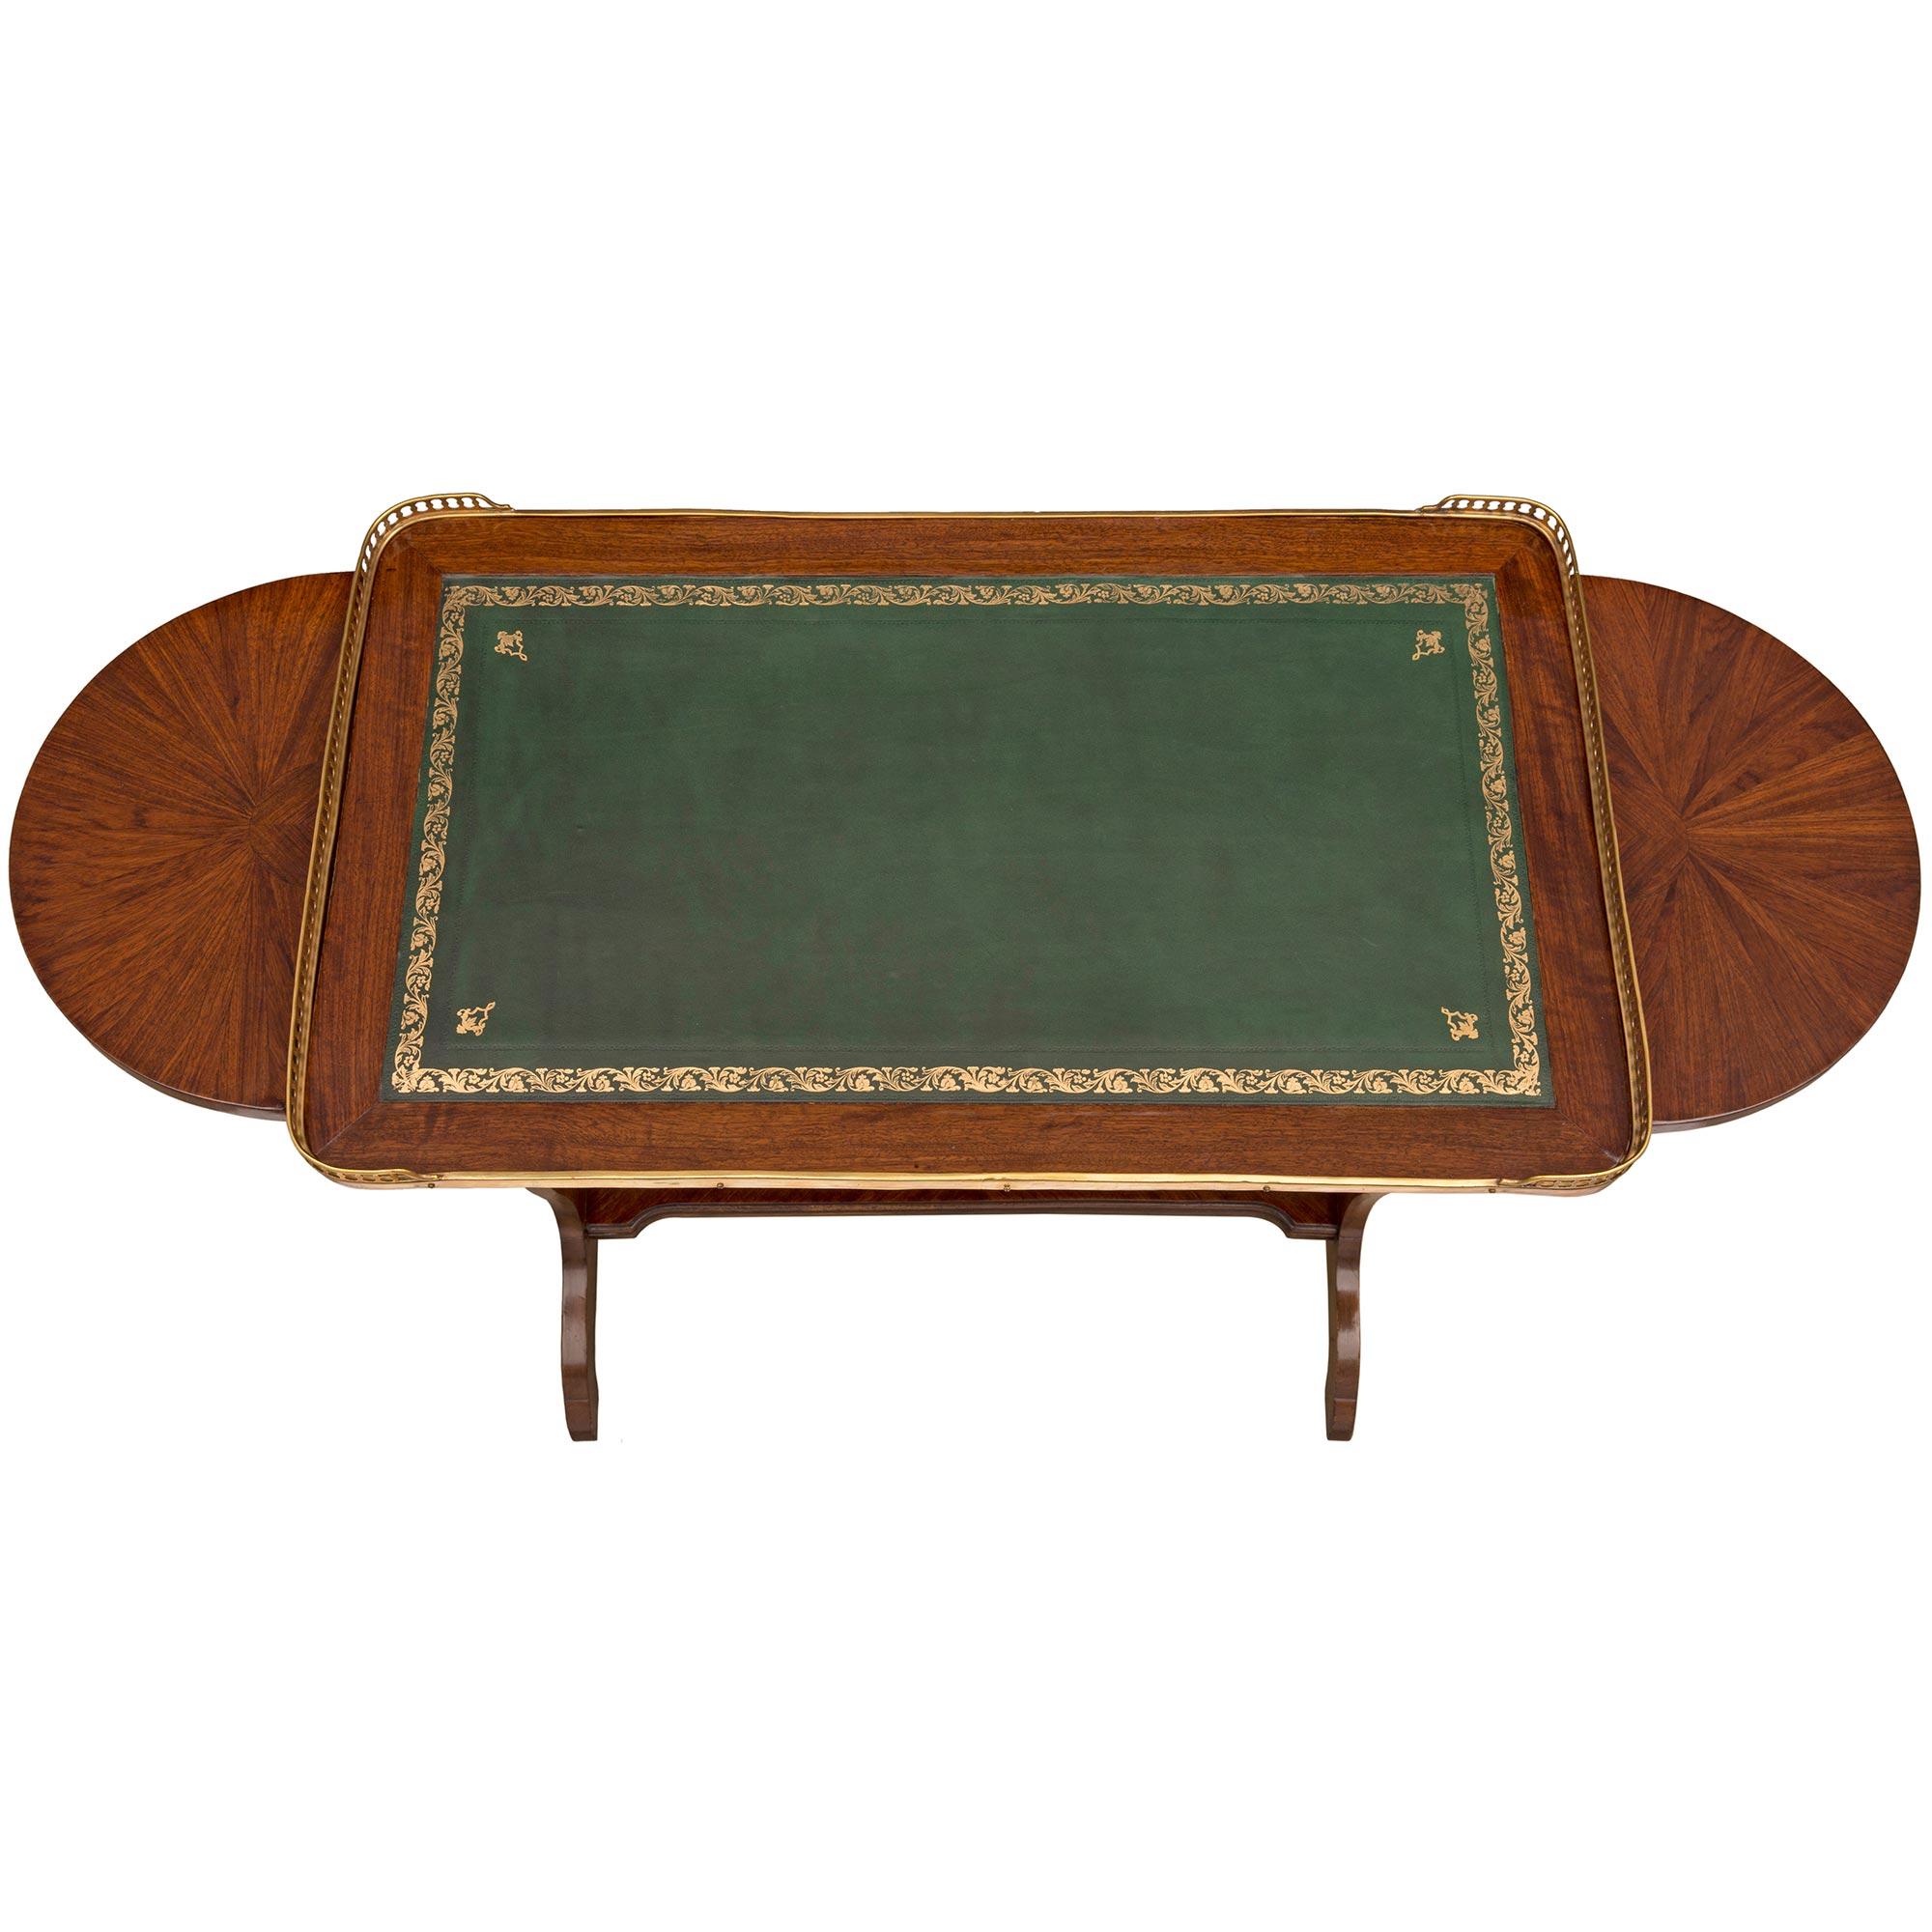 Ein eleganter französischer Beistelltisch aus Tulpenholz und Ormolu aus dem 19. Jahrhundert. Der Tisch steht auf feinen Bogenfüßen unter den formschönen, durchbrochenen Stützen, die jeweils durch eine gerade, gesprenkelte Bahre verbunden sind.